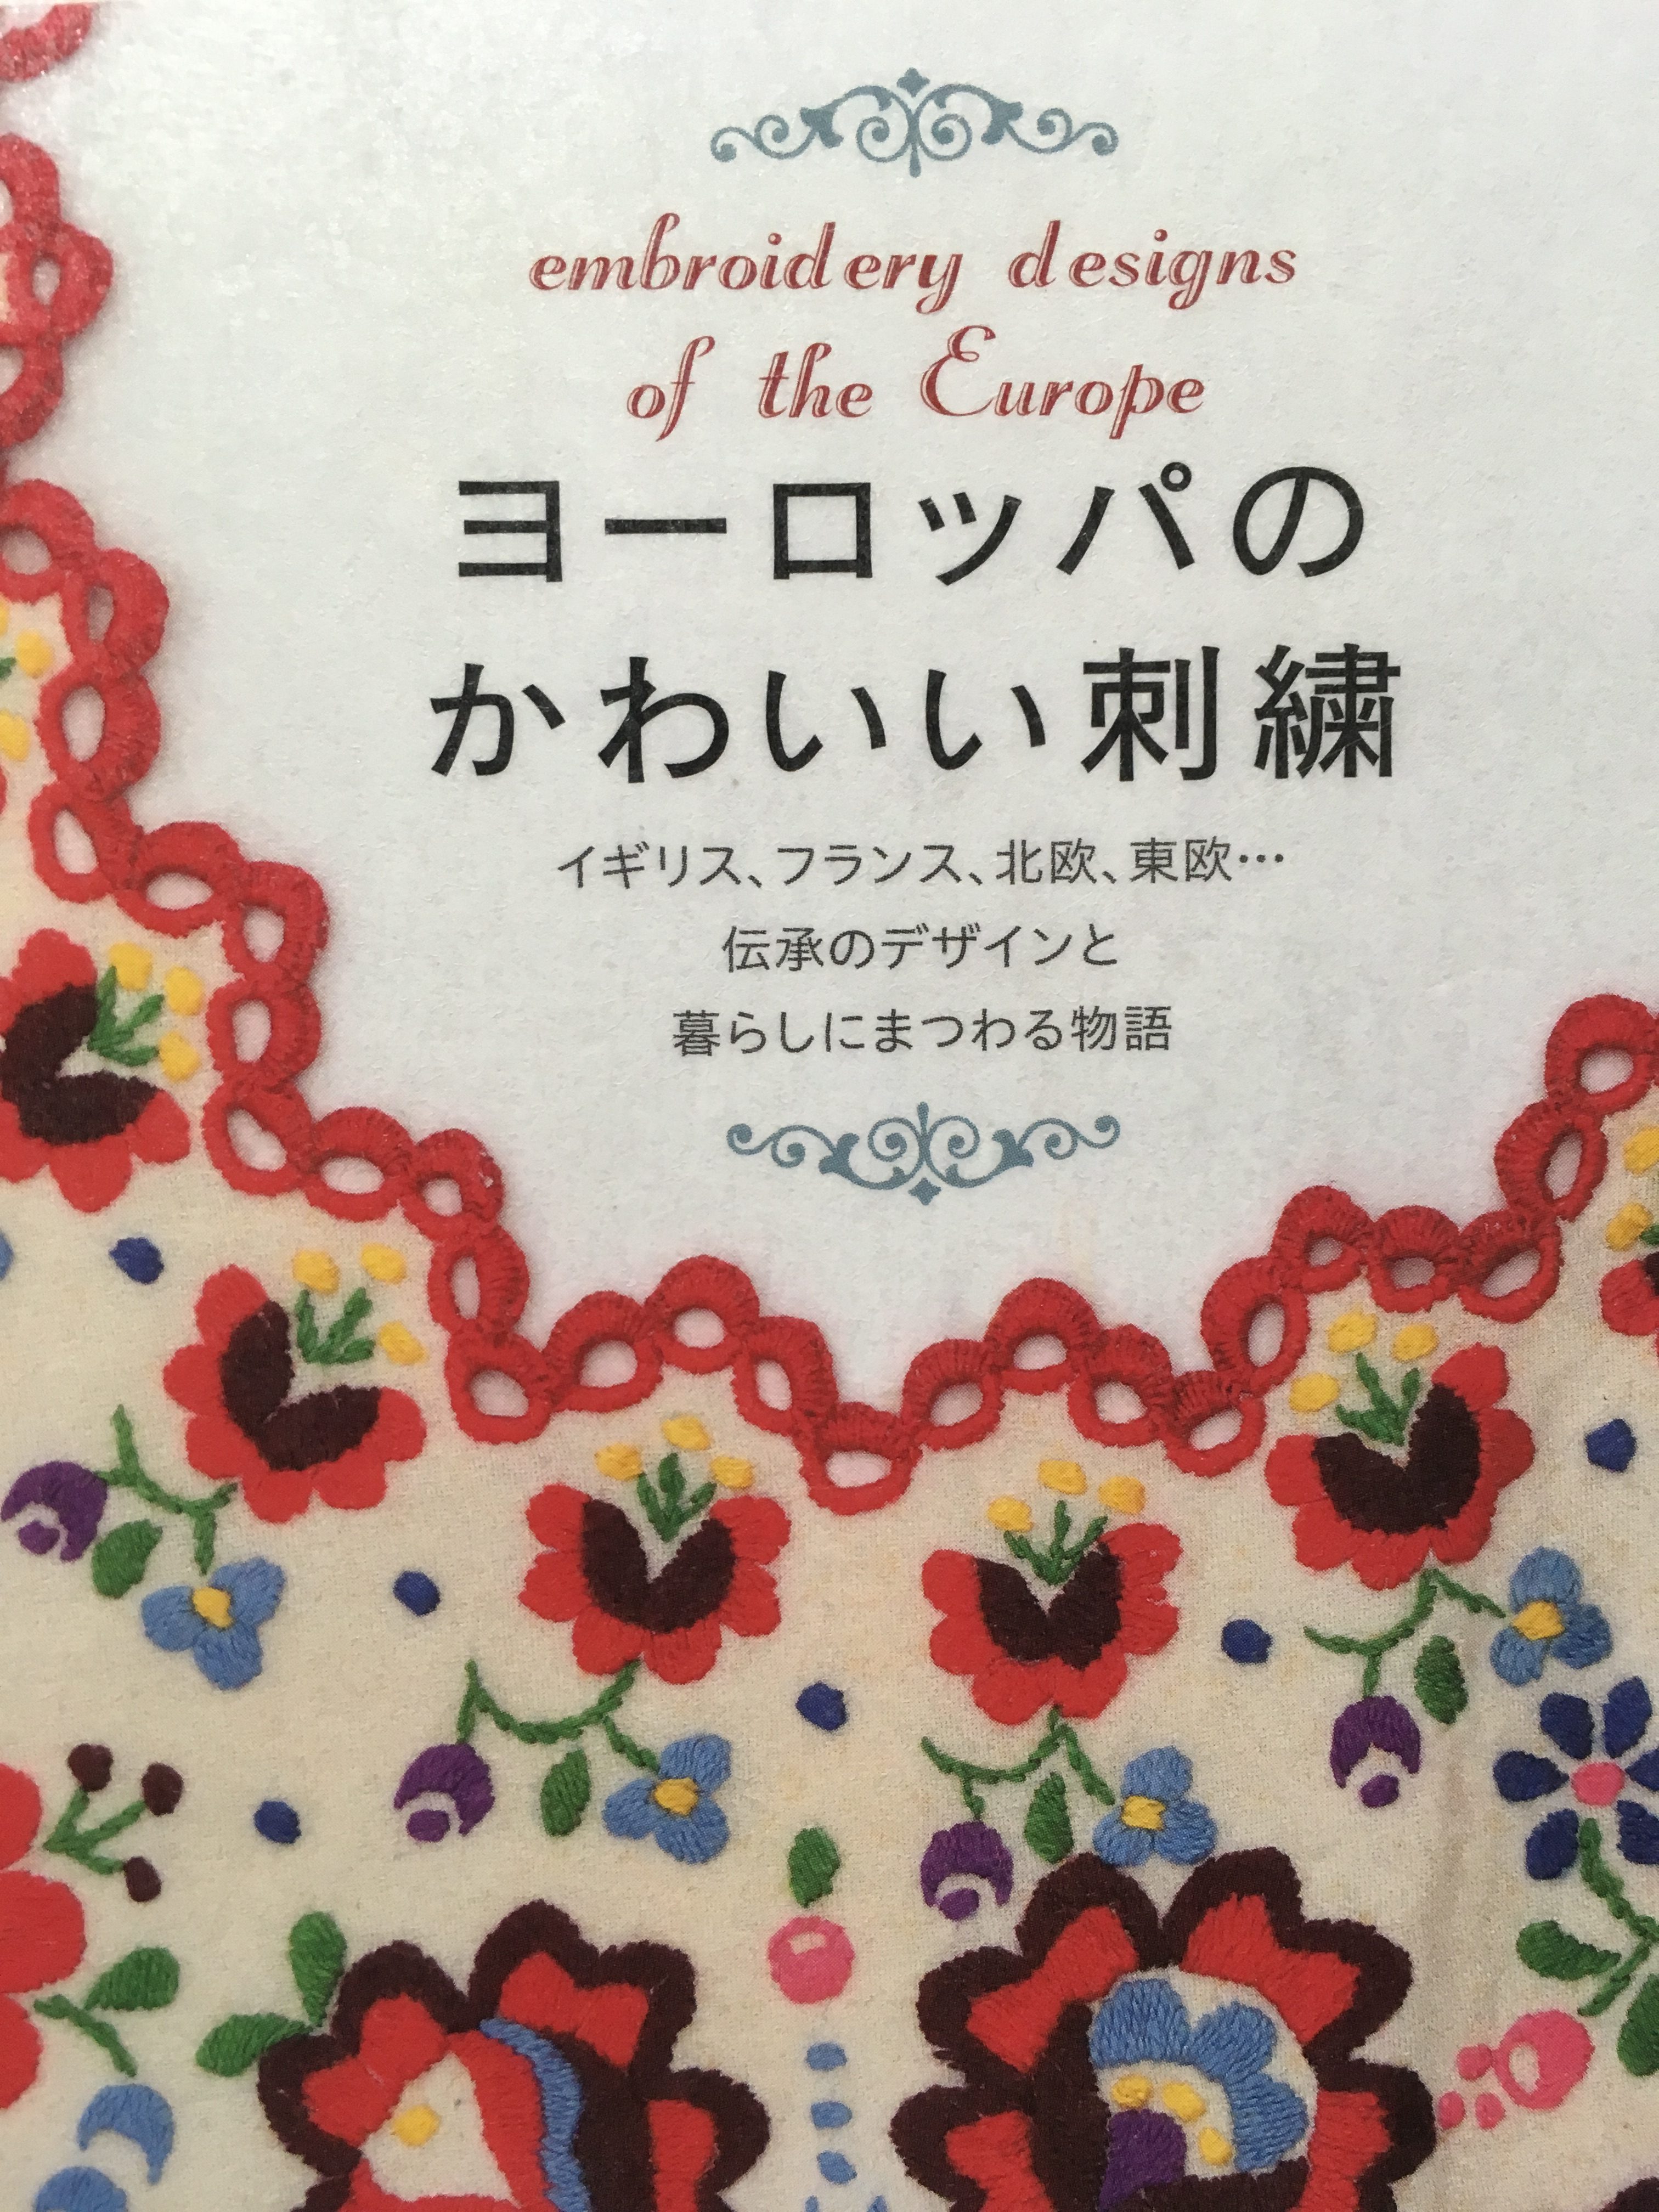 「ステッチイデーvol.25」日本ヴォーグ社さんの刺繍雑誌が発売されました。